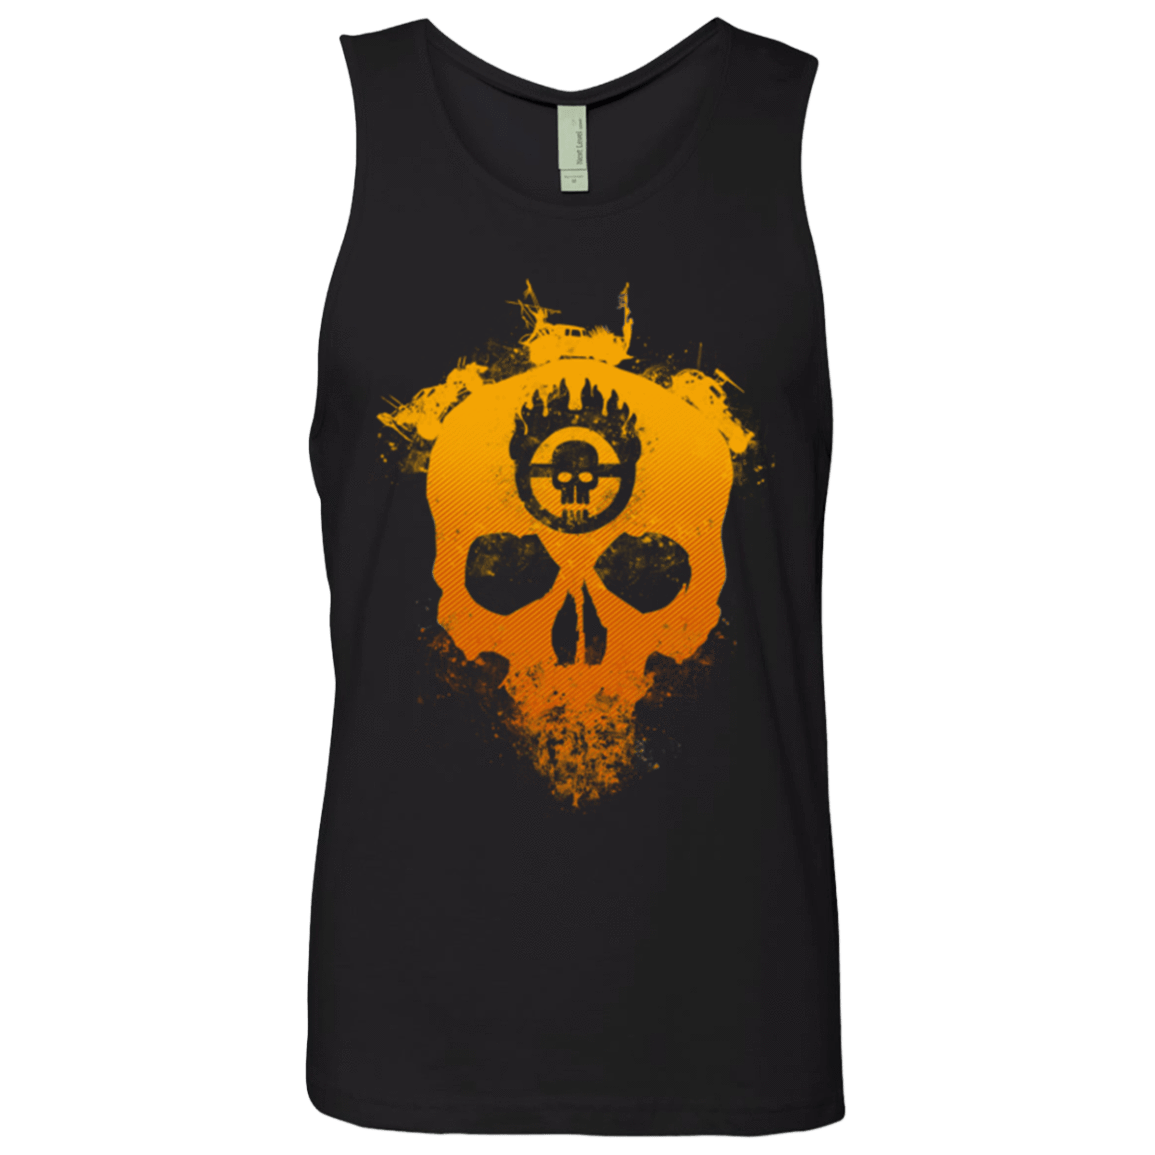 T-Shirts Black / Small Road warrior 2 Men's Premium Tank Top